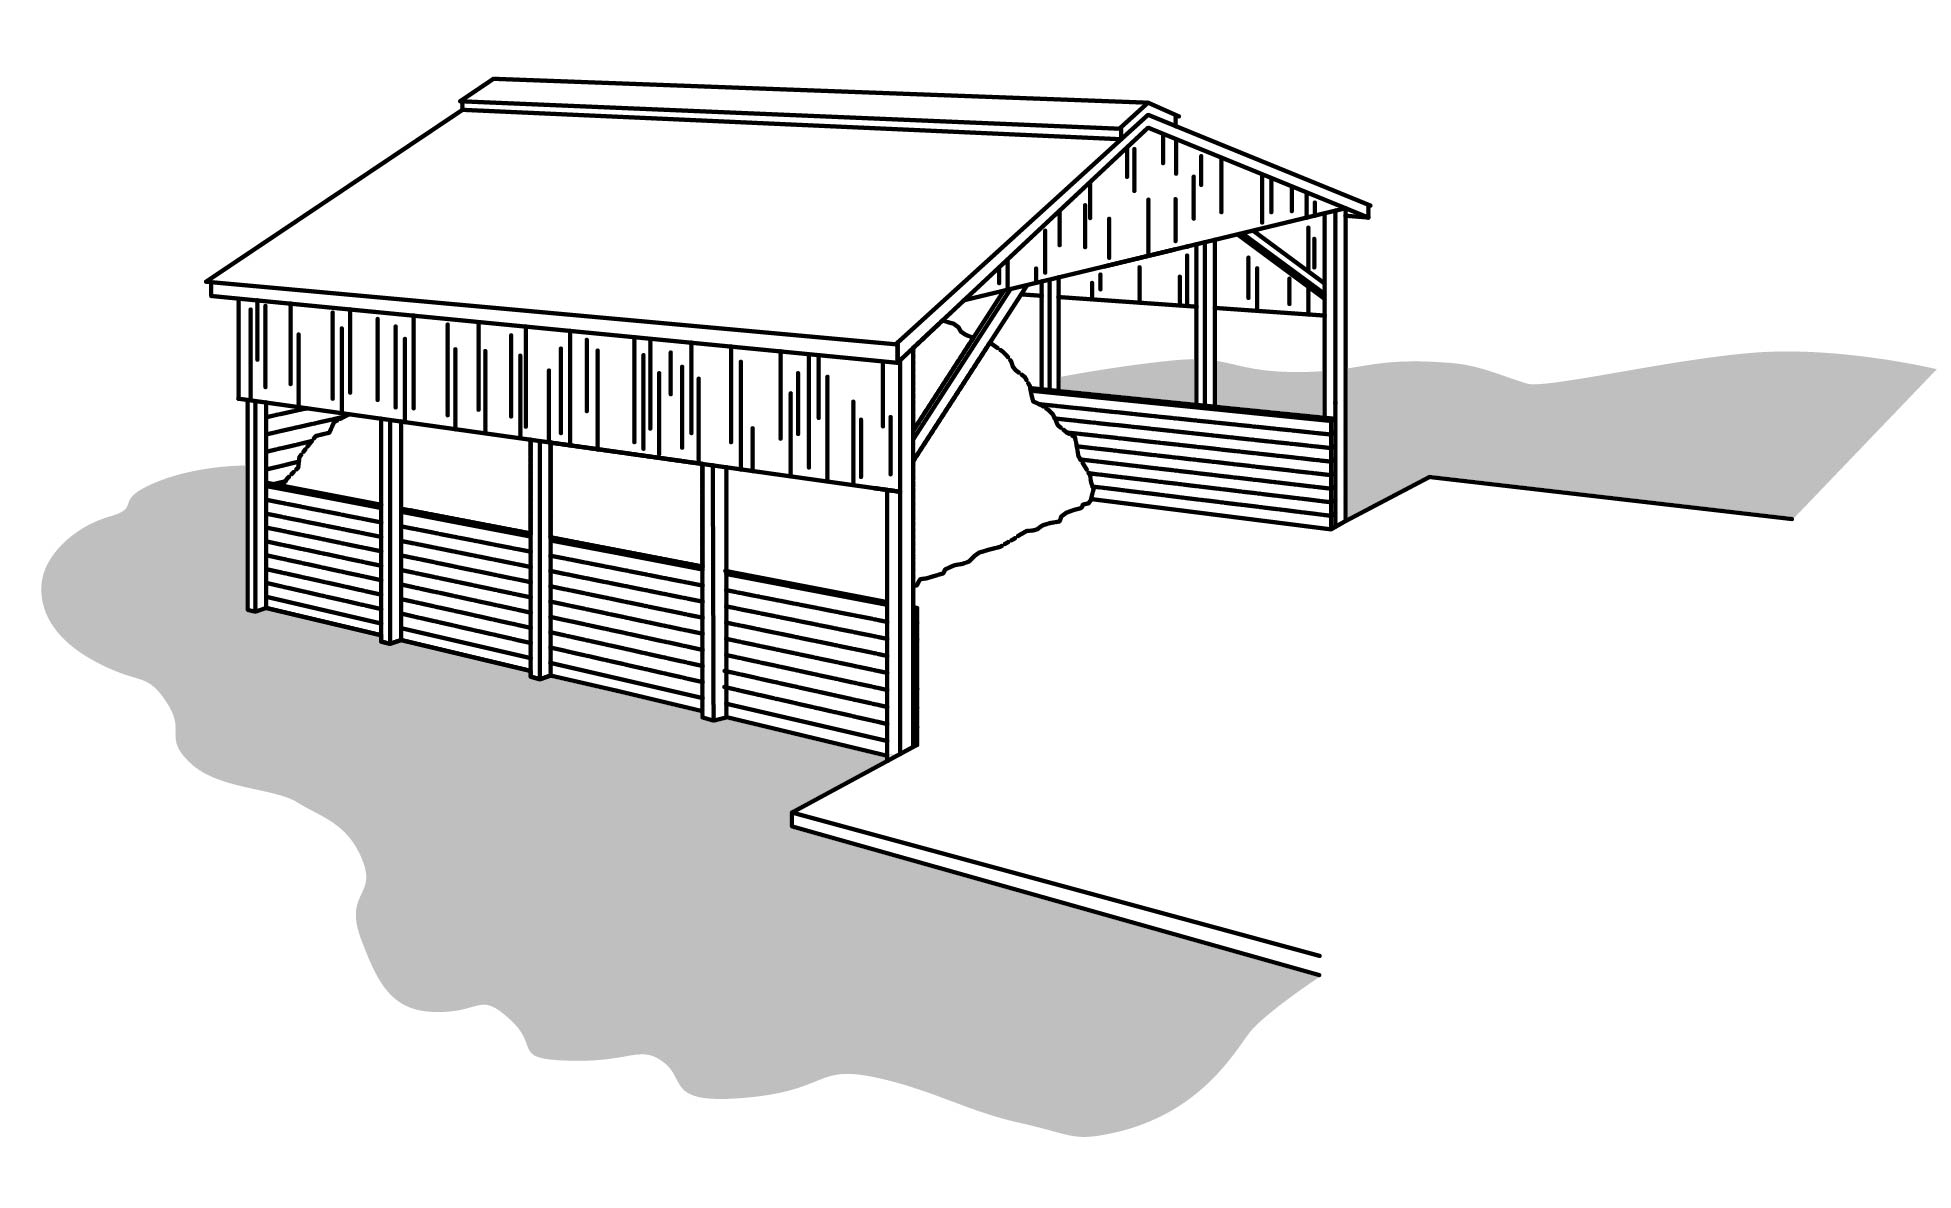 Dessin tridimensionnel d’une structure de stockage de fumier solide ouverte sur le devant, avec trois parois partiellement ouvertes et un toit.